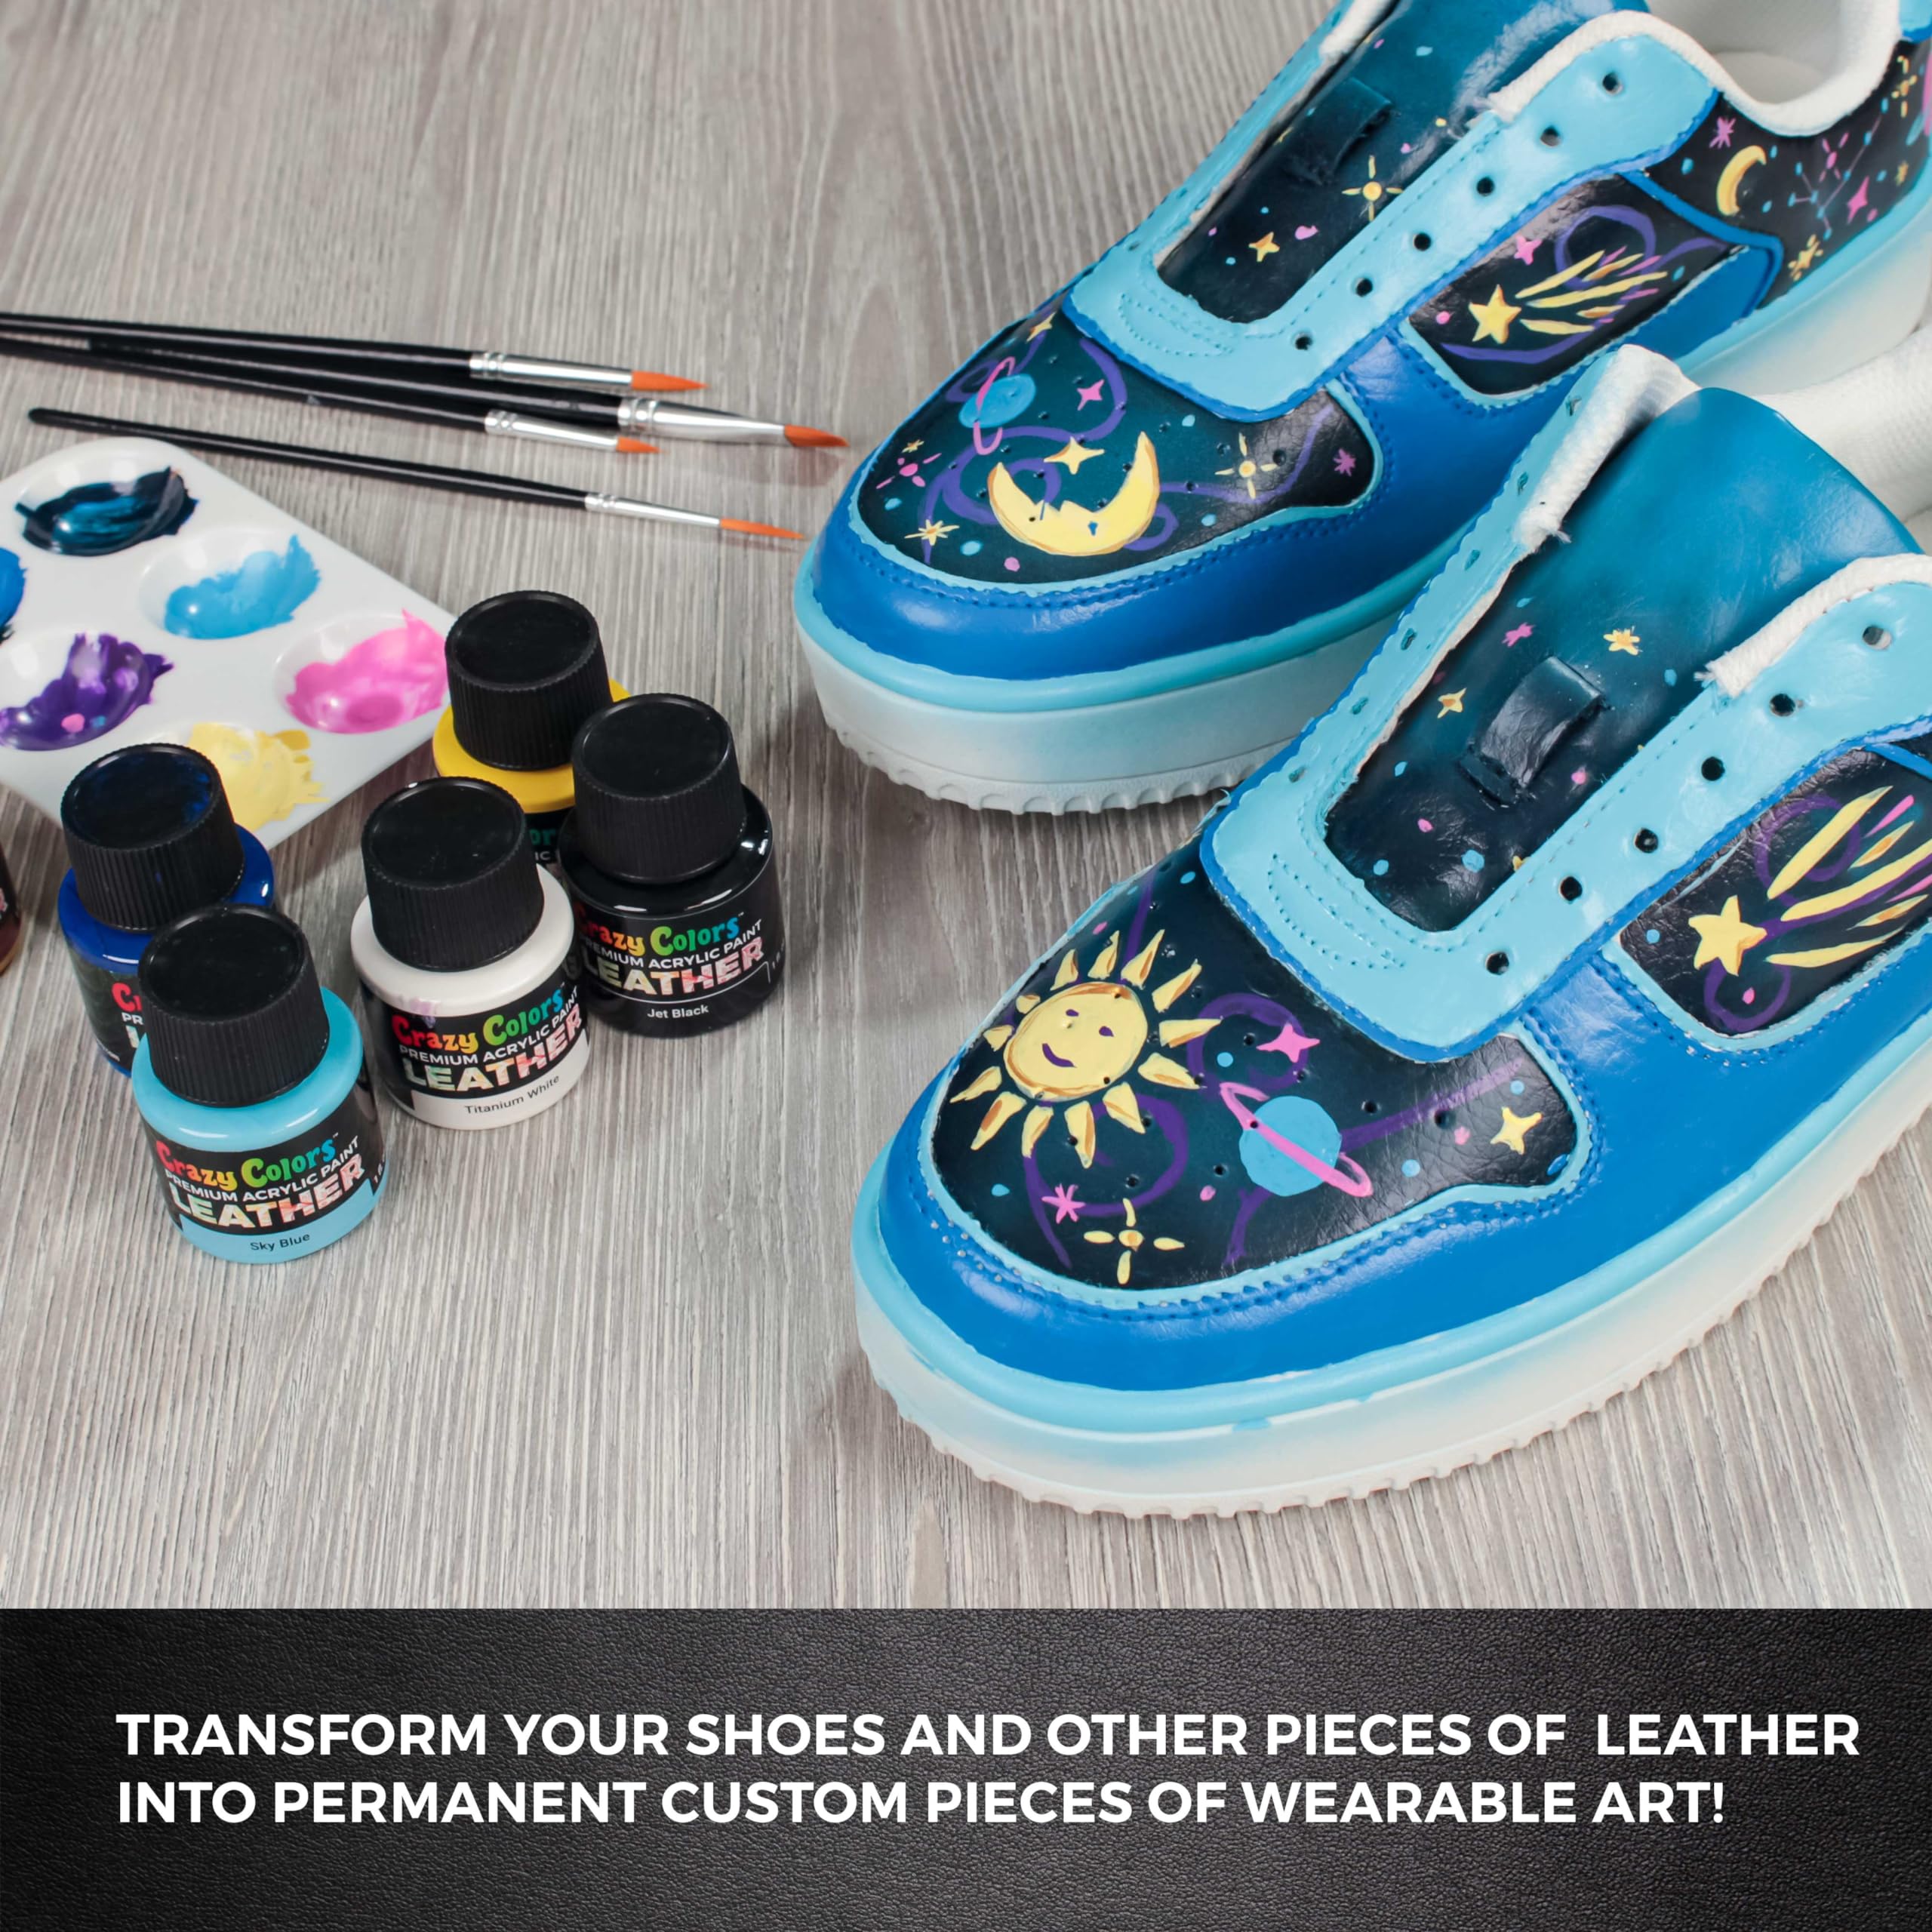 Crazy Colors Premium Acrylic Leather and Shoe Paint Kit, 13 Colors, Deglazer, 4-Piece Brush Set - 1 oz Bottles, Flexible, Scratch Peel Resistant - Artist Sneakers, Jackets, Bags, Purses, Furniture